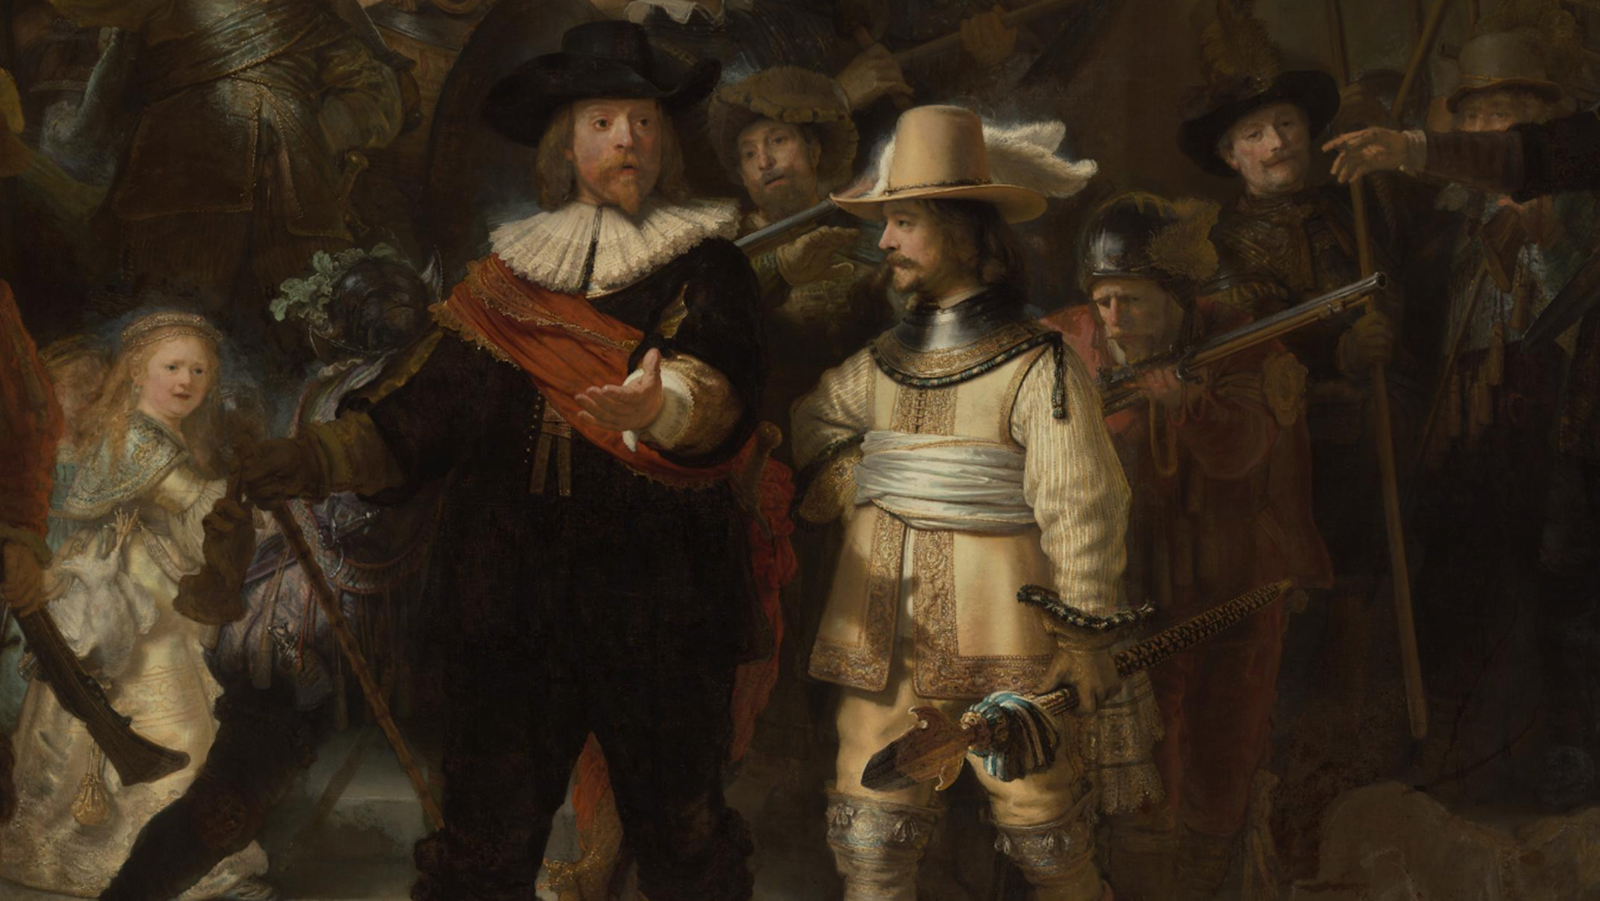 Rembrandt van Rijn, The Night Watch, 1642, Rijksmuseum, Amsterdam, Netherlands. Detail.